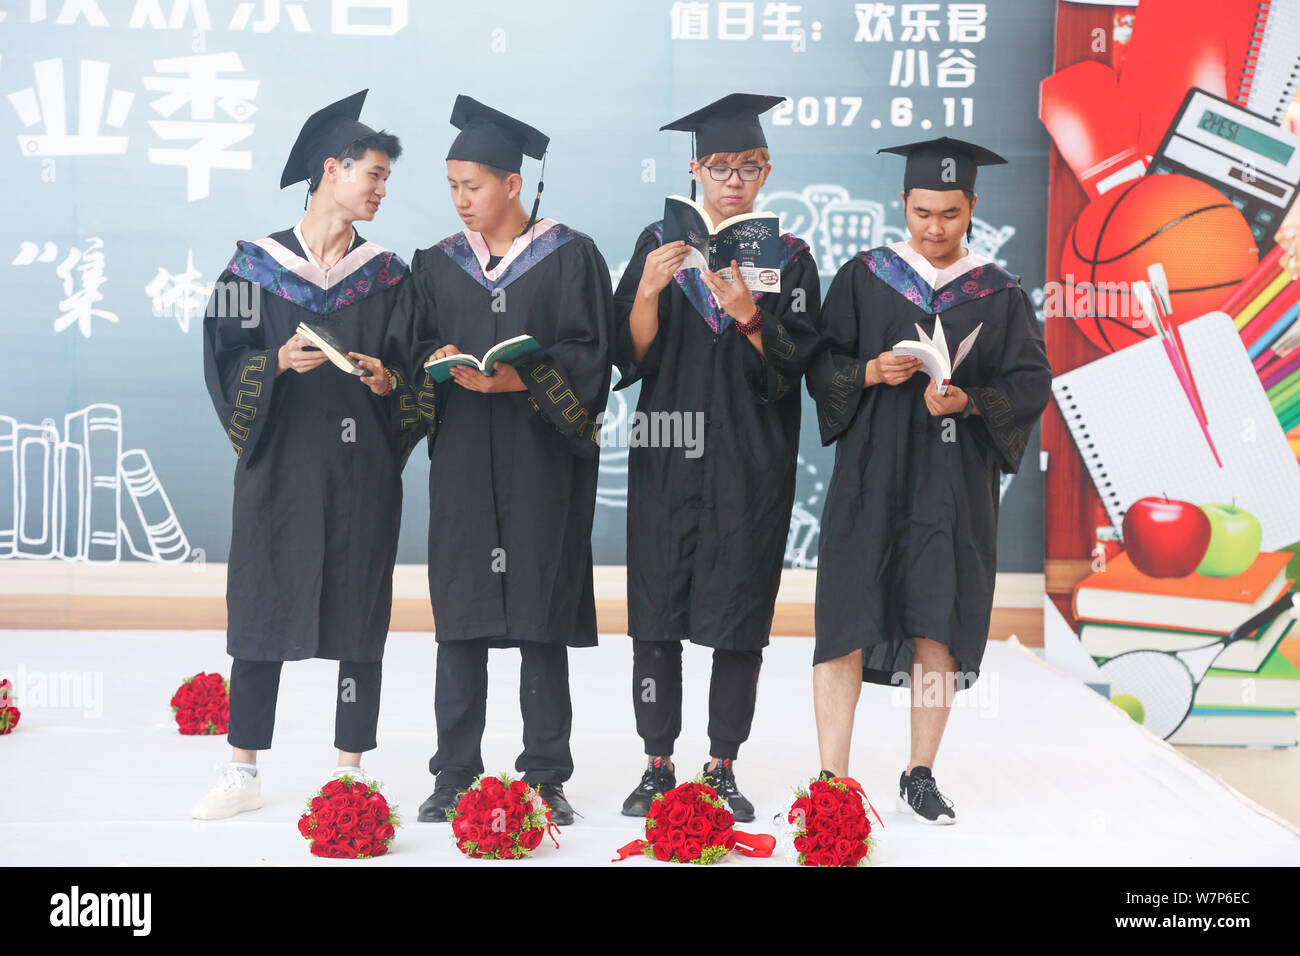 Bräutigam an der Staffelung Kleider sind bei einer Gruppe Trauung für Paare der schulfreund Liebhaber aus einer Universität Wuhan Happy Valley Amusement Gleichheit gesehen Stockfoto